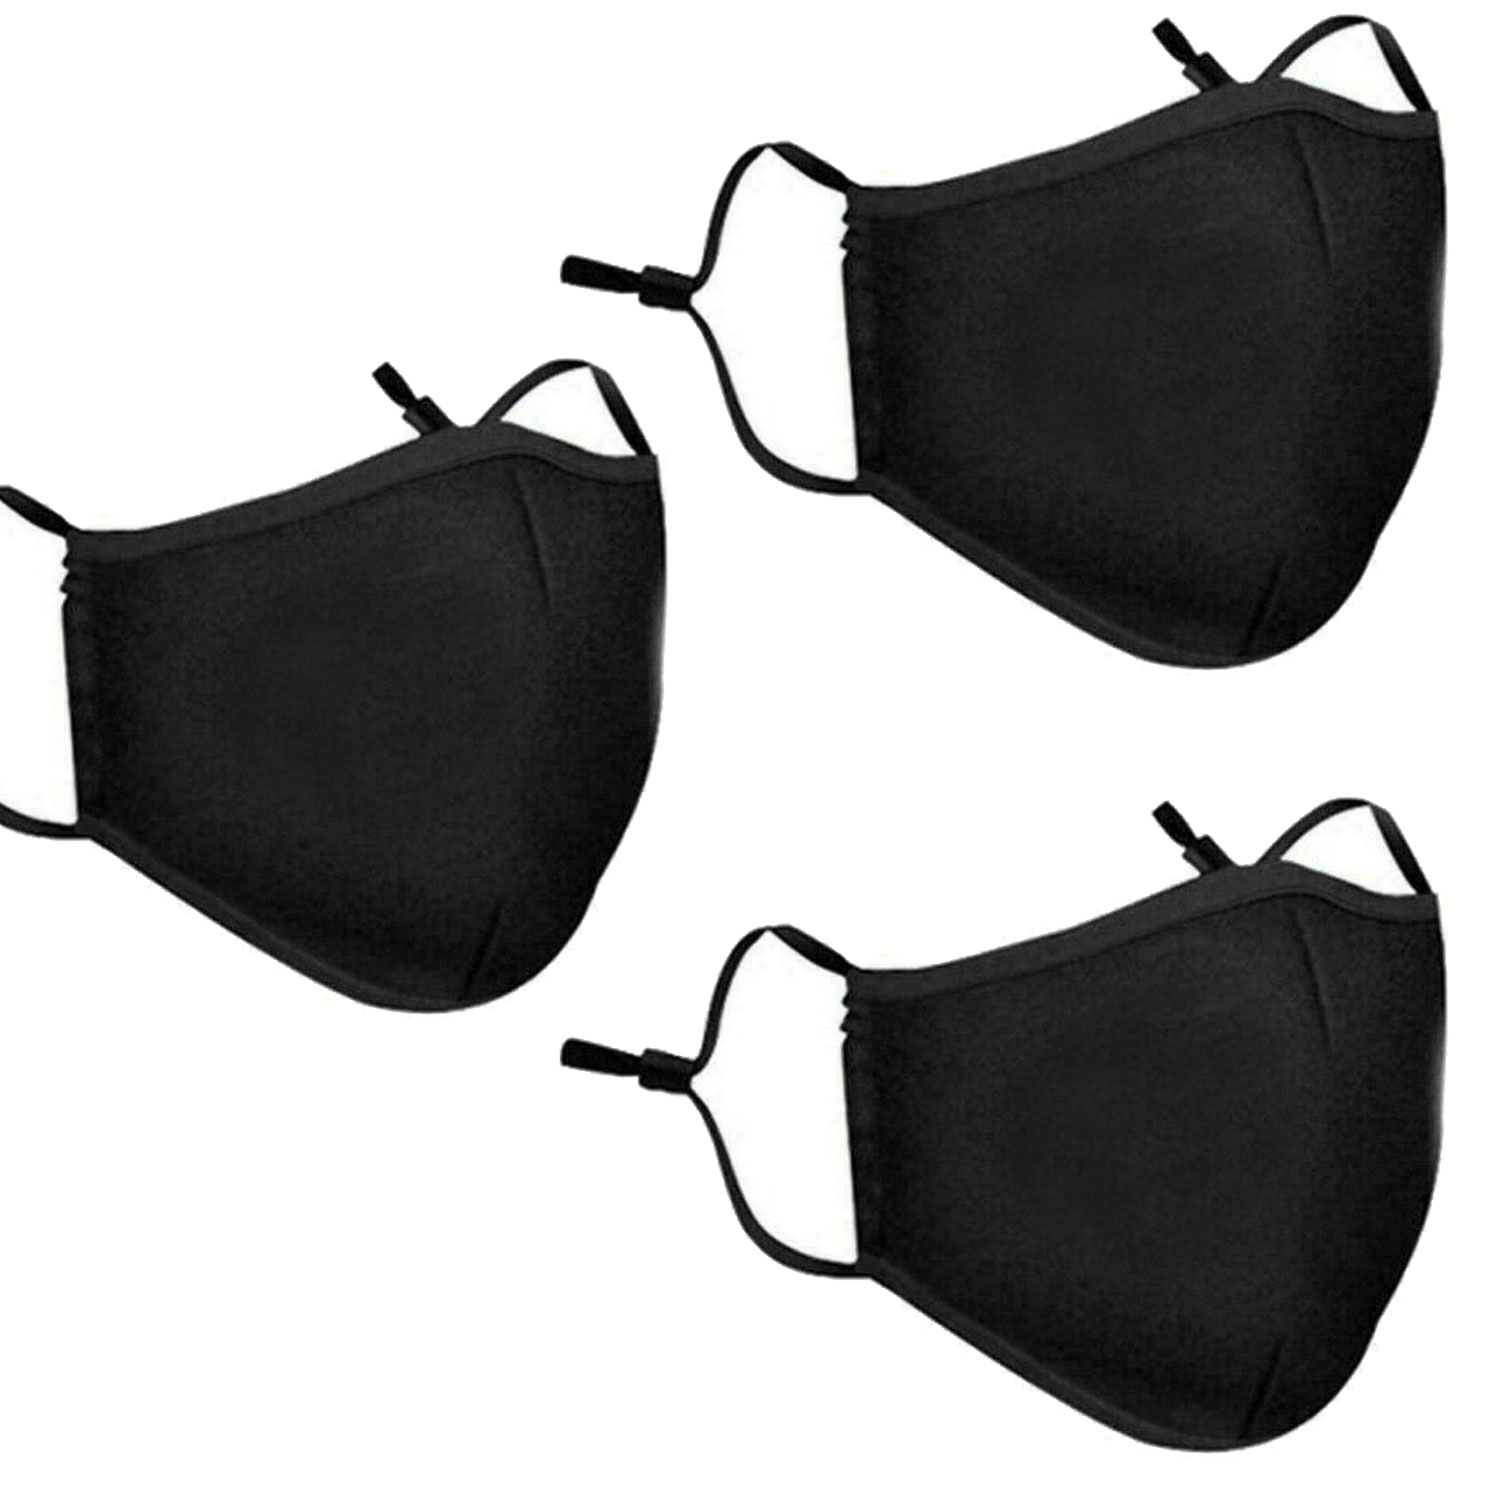 thumbnail 6 - 3 PCS Washable Face Mask Black Reusable Breathable Unisex Double Layer Cotton